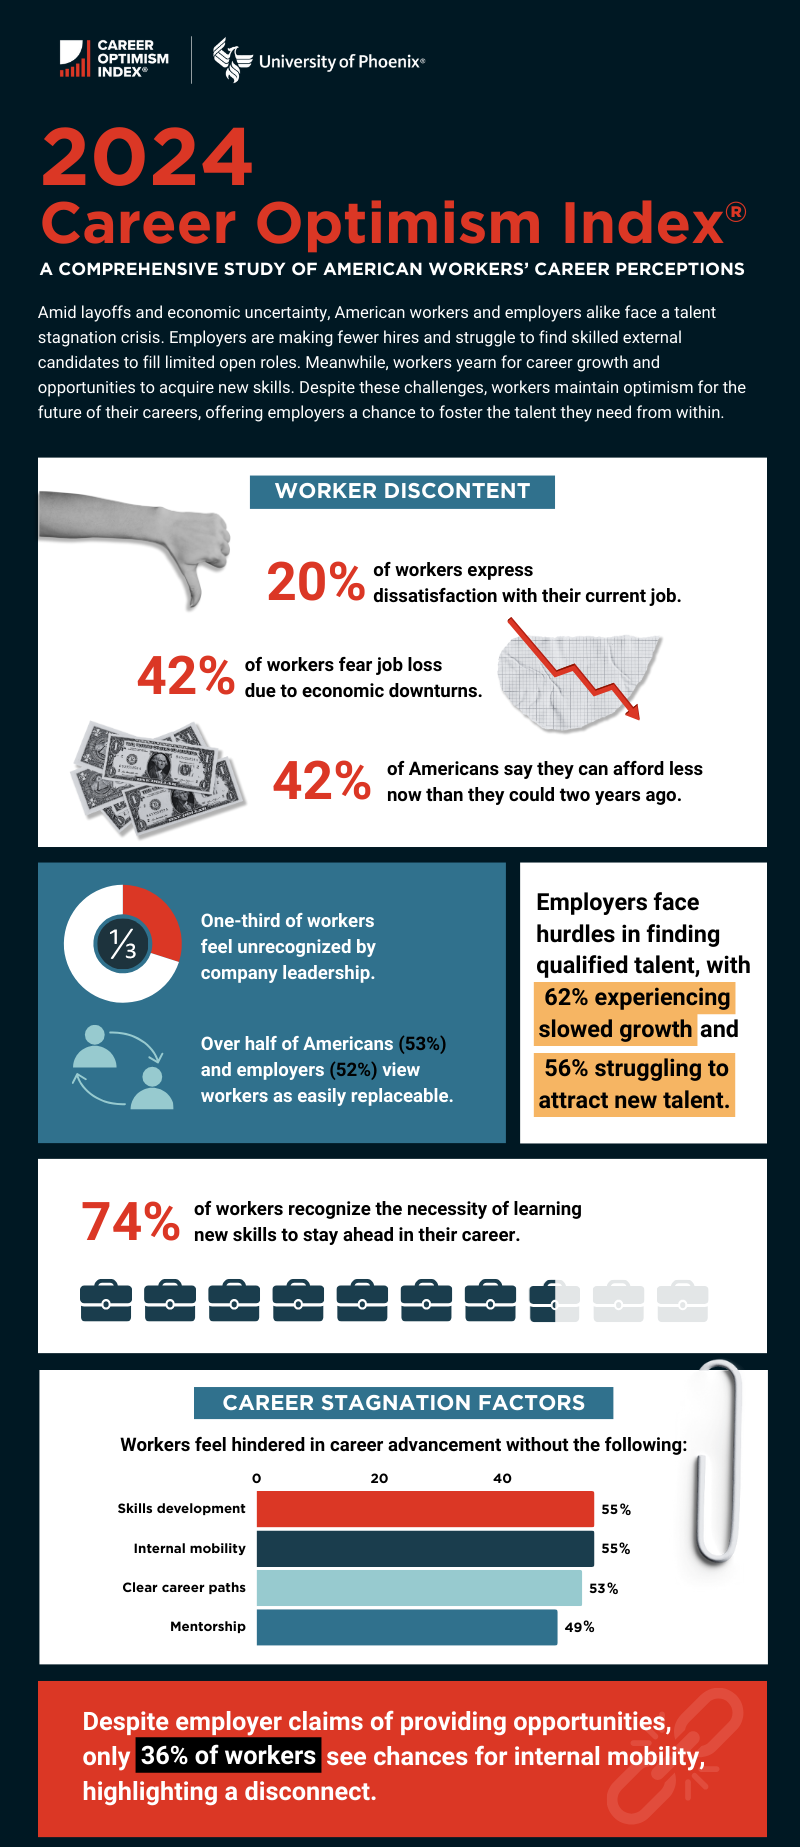 2023 Career Optimism Index infographic, part 1